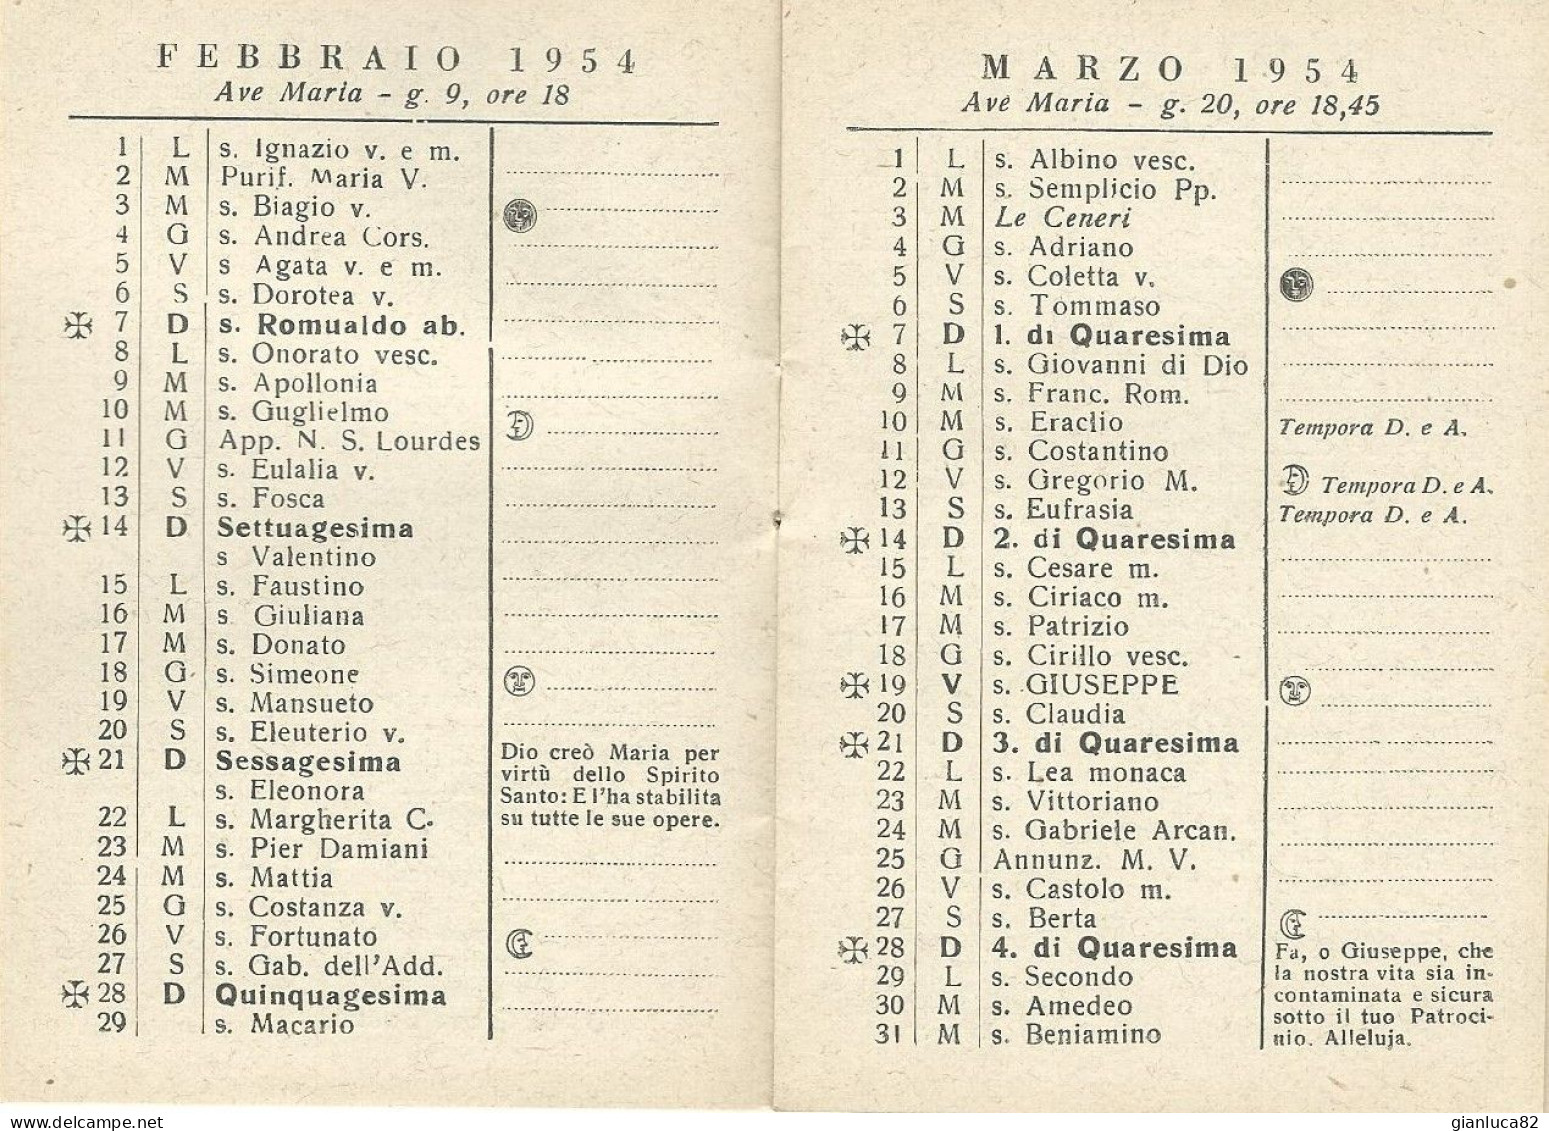 Lotto N.5 Calendarietti Jte Ad Joseph Opera Divino Amore Napoli 1953,1954,1963,1971,1972 Come Da Foto 12,0 X 8,5 Cm - Petit Format : 1941-60